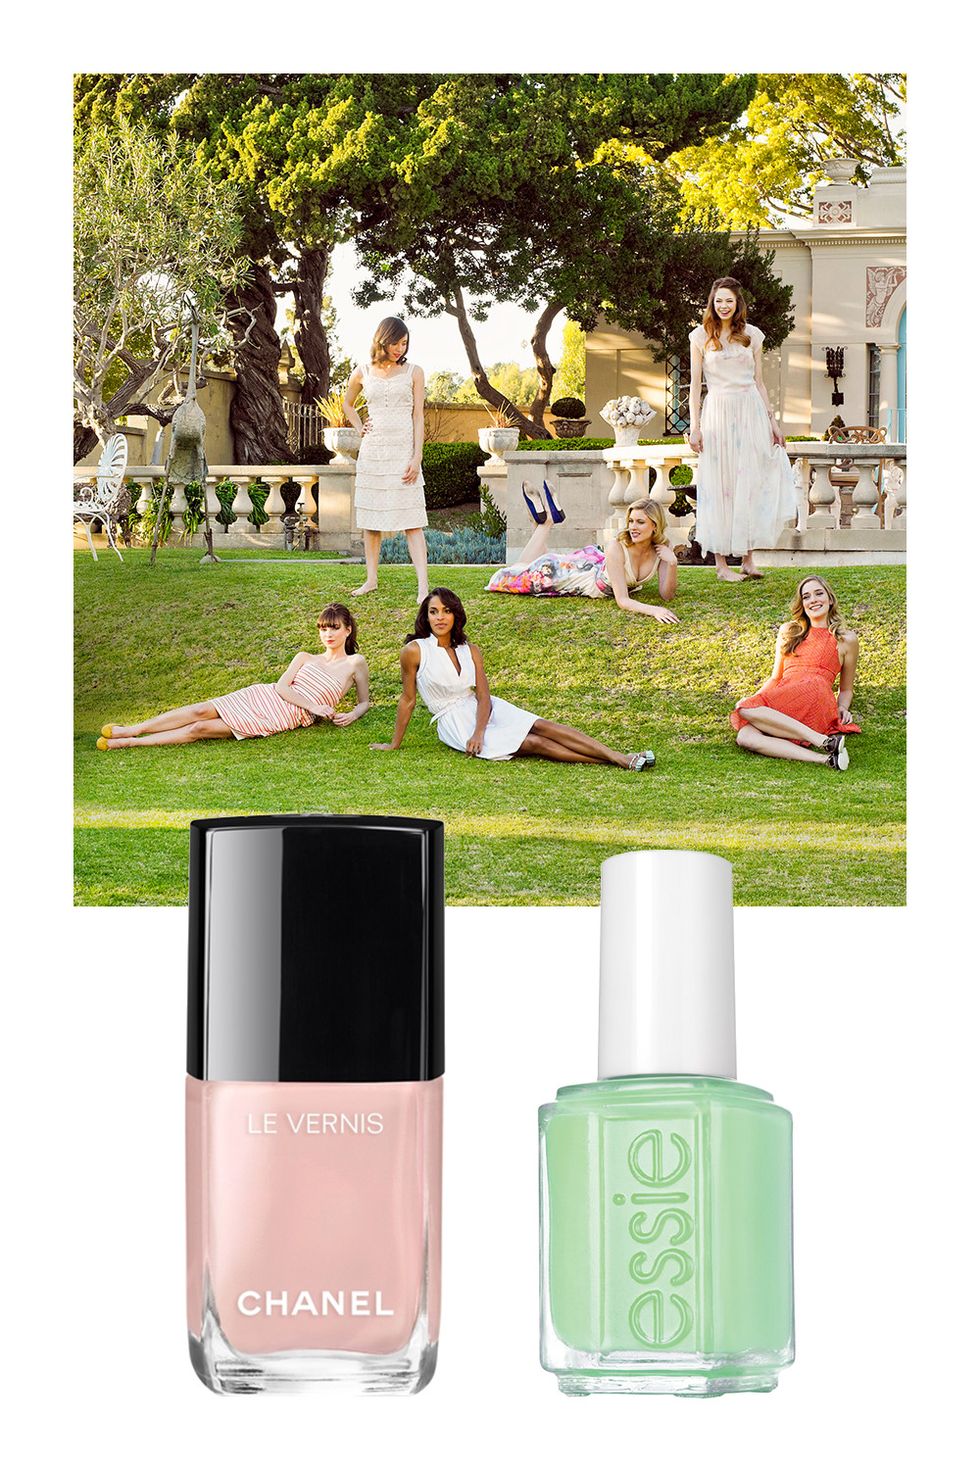 10 best nail polish for summer, Chanel, Dior, Dolce&Gabbana, Essie